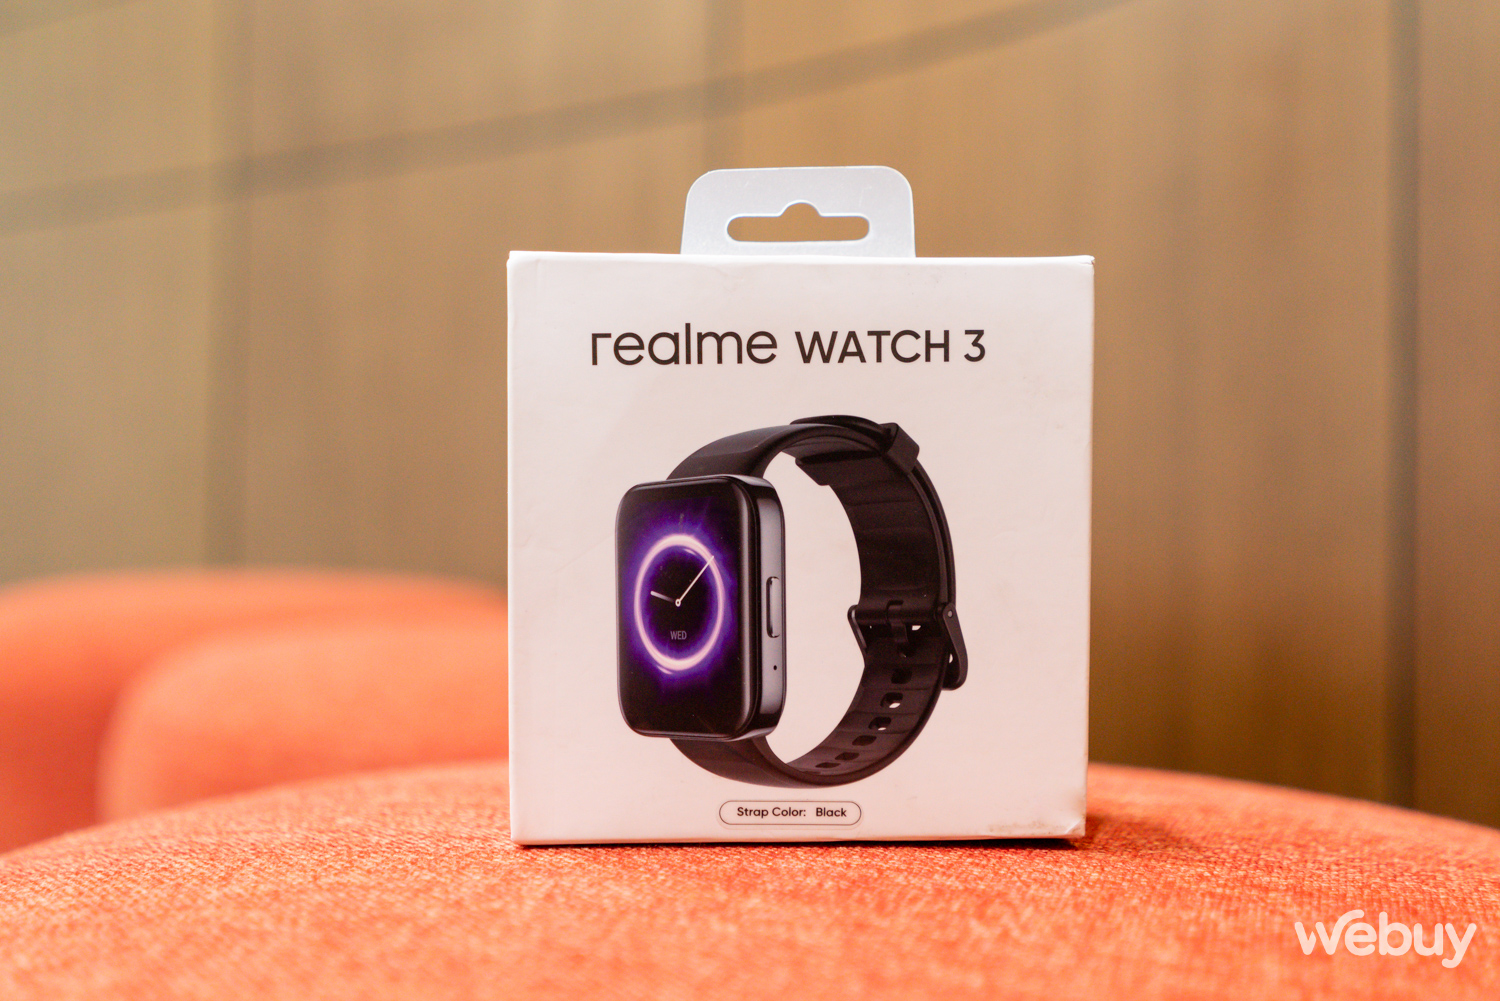 Trên tay đồng hồ realme Watch3: Thiết kế đẹp, pin dùng được 7 tiếng, có thể nghe gọi được - Ảnh 2.